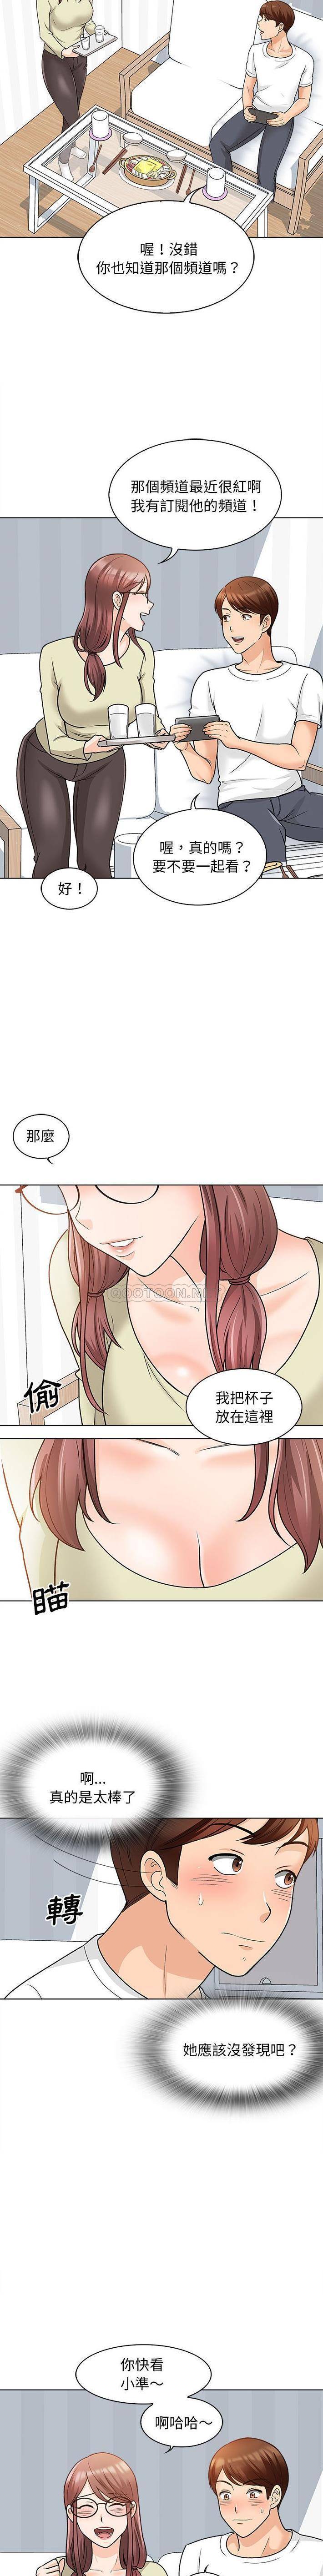 韩国污漫画 幸福公寓 第11话 8